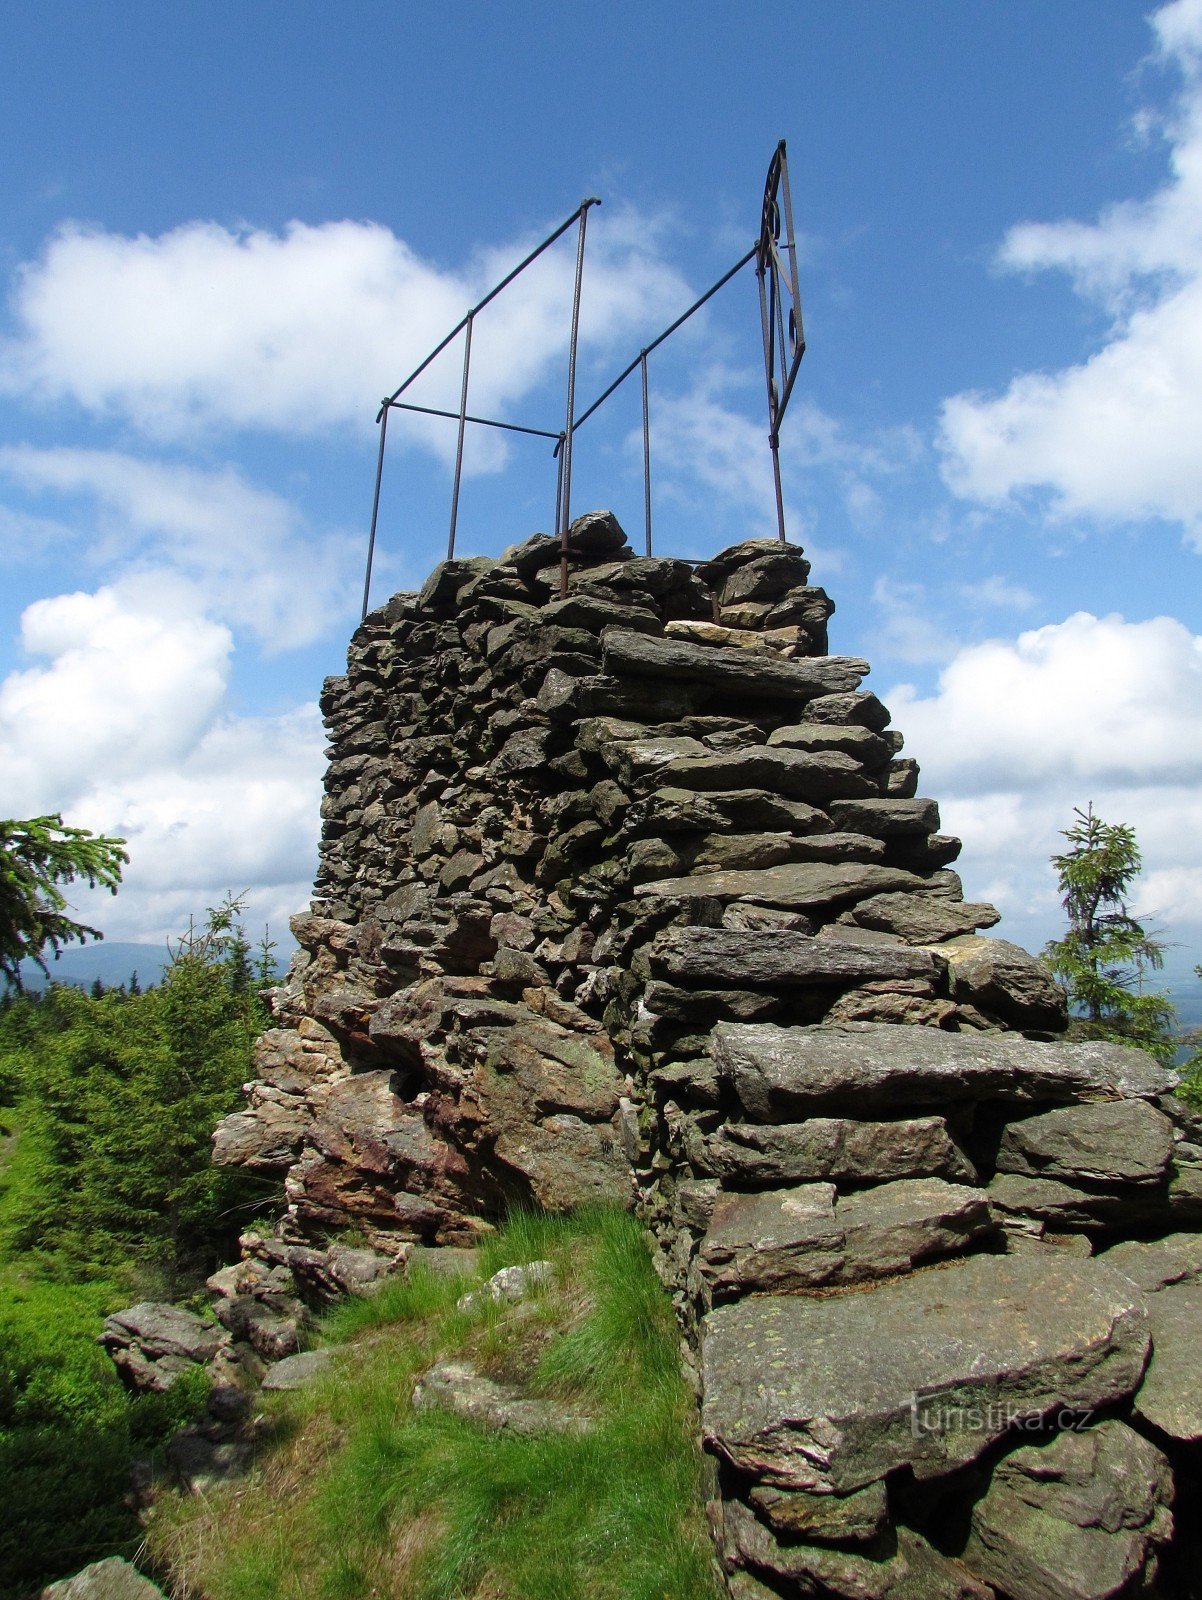 Prečna vzpetina - kamniti razgledni stolp